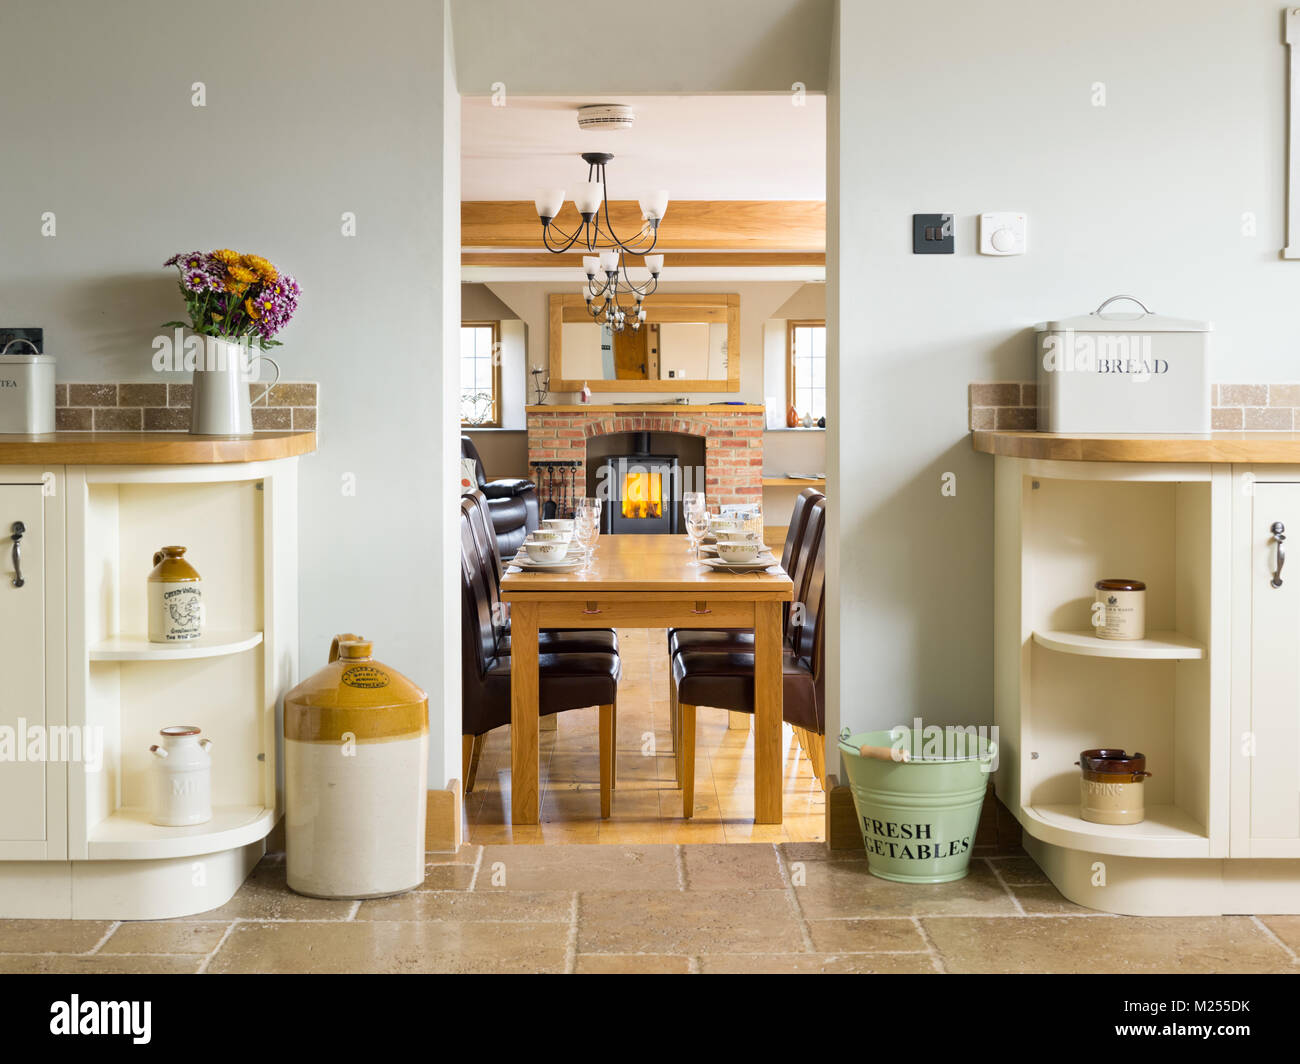 Una vista a través de un hogar de la cocina, en la sala de estar con una estufa de leña en una chimenea de ladrillo Foto de stock